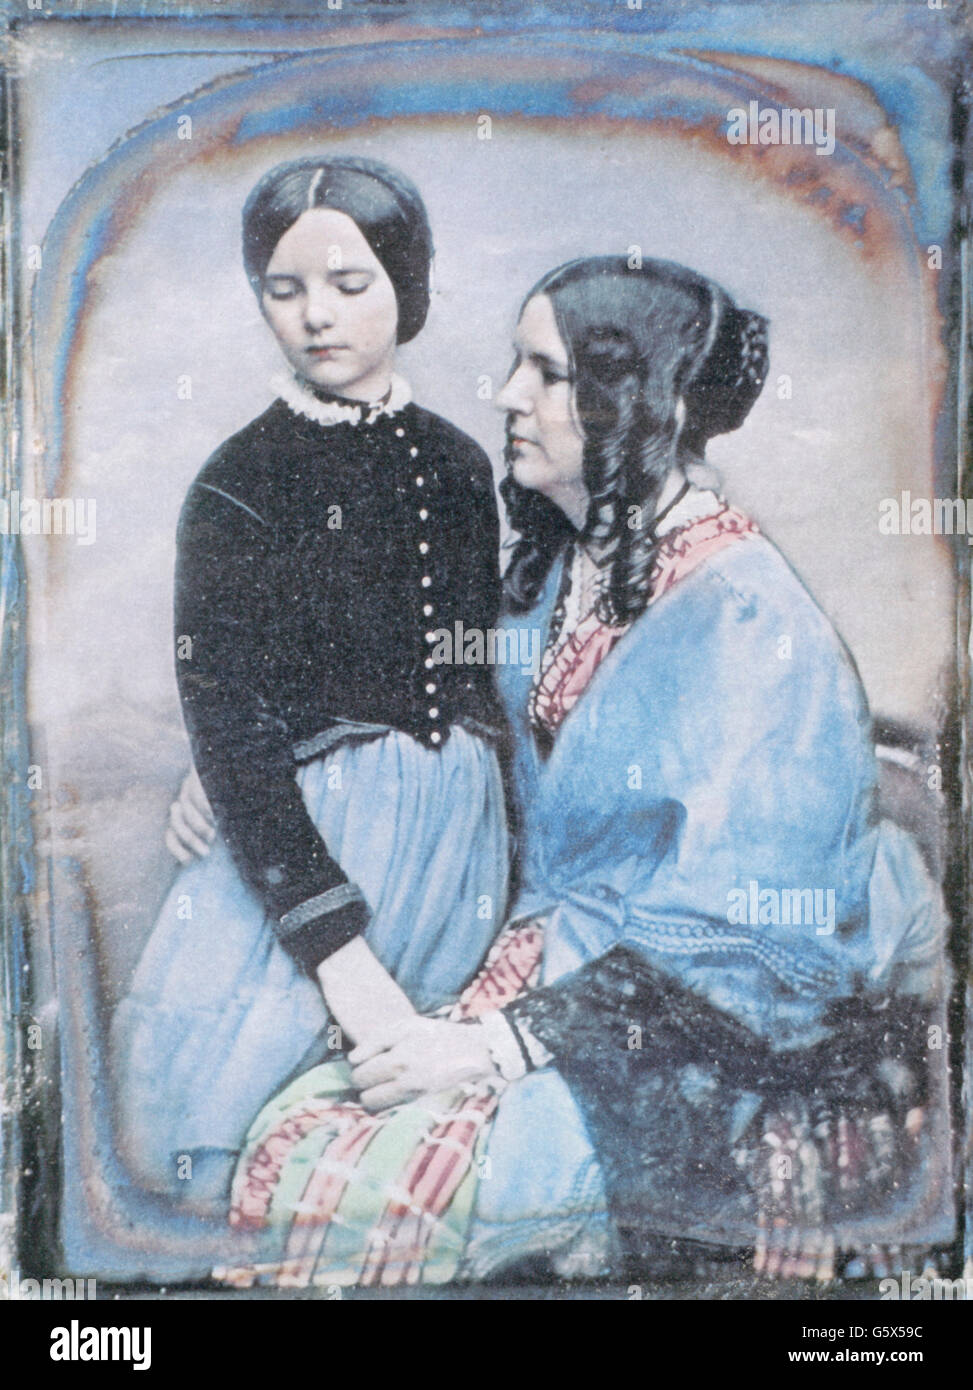 Photographie, daguerréotype, mère et fille, par William Edward Kilburn (1818 - 1891), vers 1846, droits additionnels-Clearences-non disponible Banque D'Images